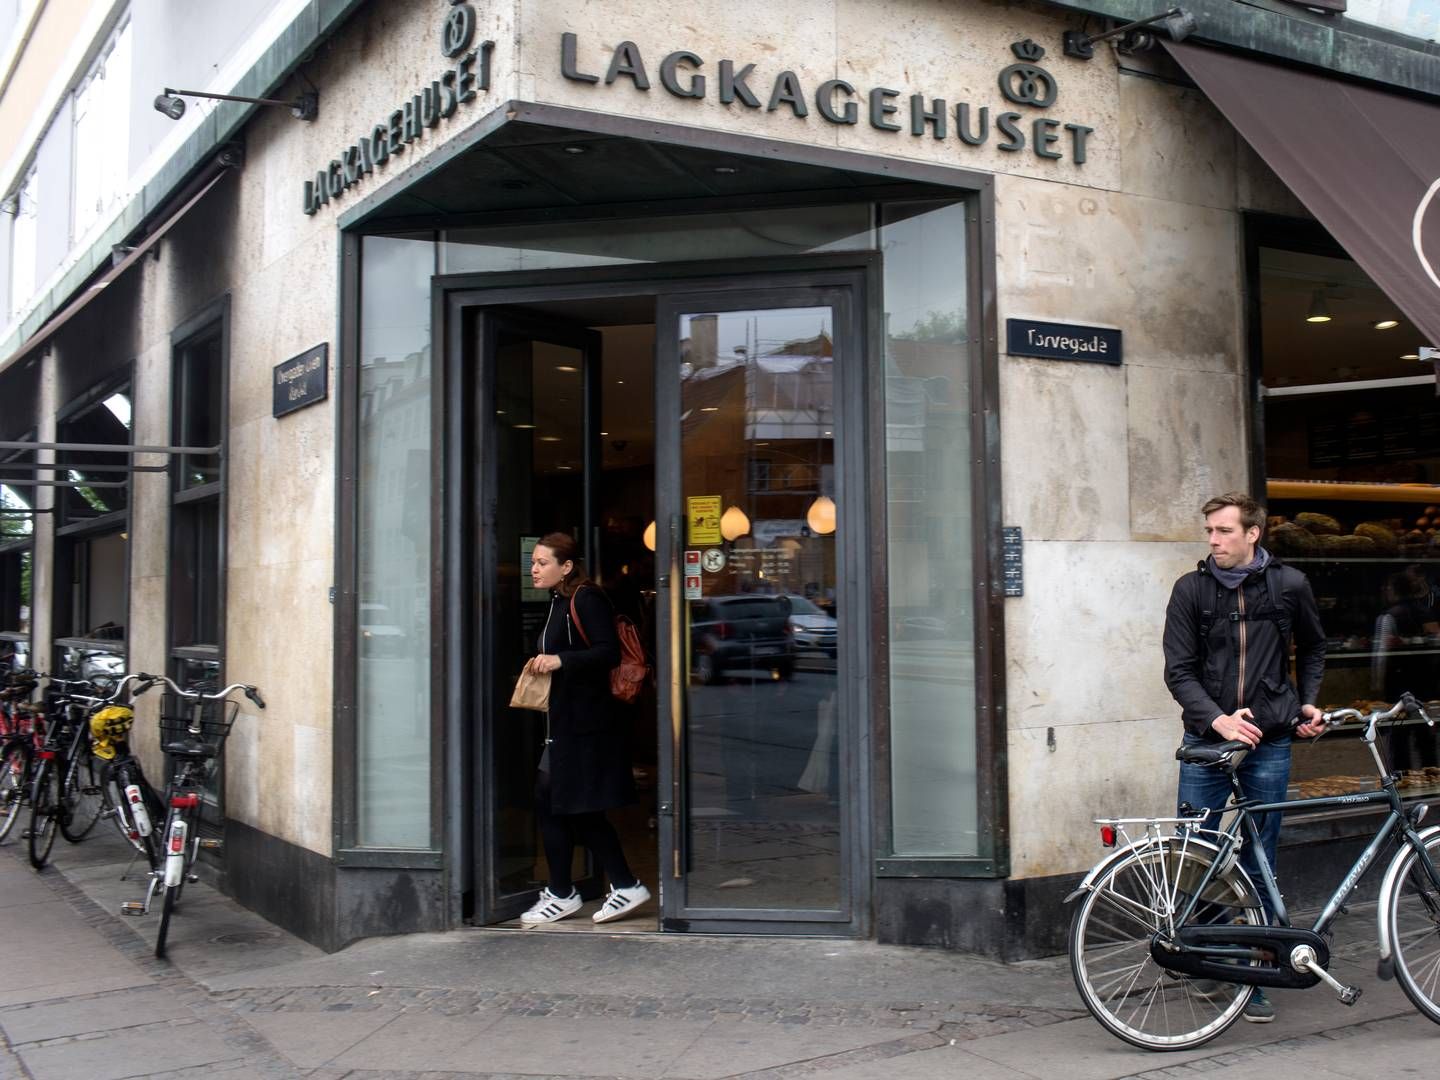 Den første af Lagkagehusets forretninger åbnede for 32 år siden på Christianshavn. Siden overtagelsen af to kapitalfonde i 2017, er der blevet skudt 1,45 mia. kr. i forretningen. | Foto: Ivan Boll